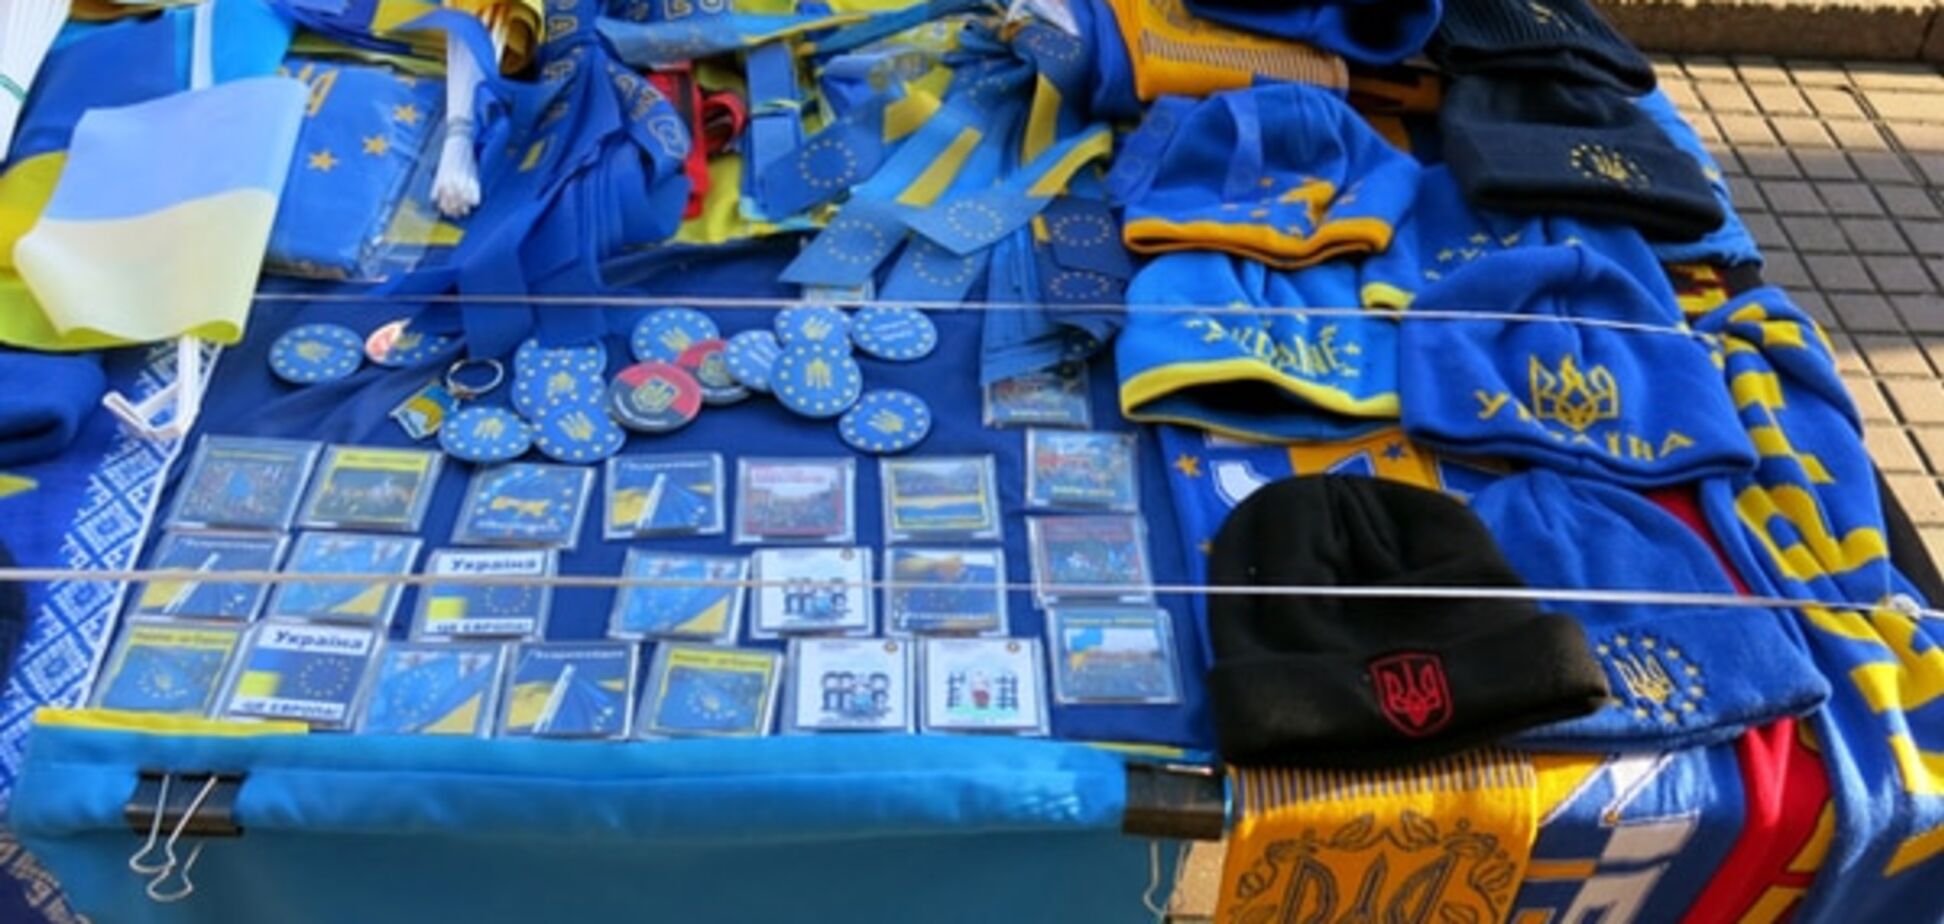 Євромайдан на продаж: як революція змінила український ринок